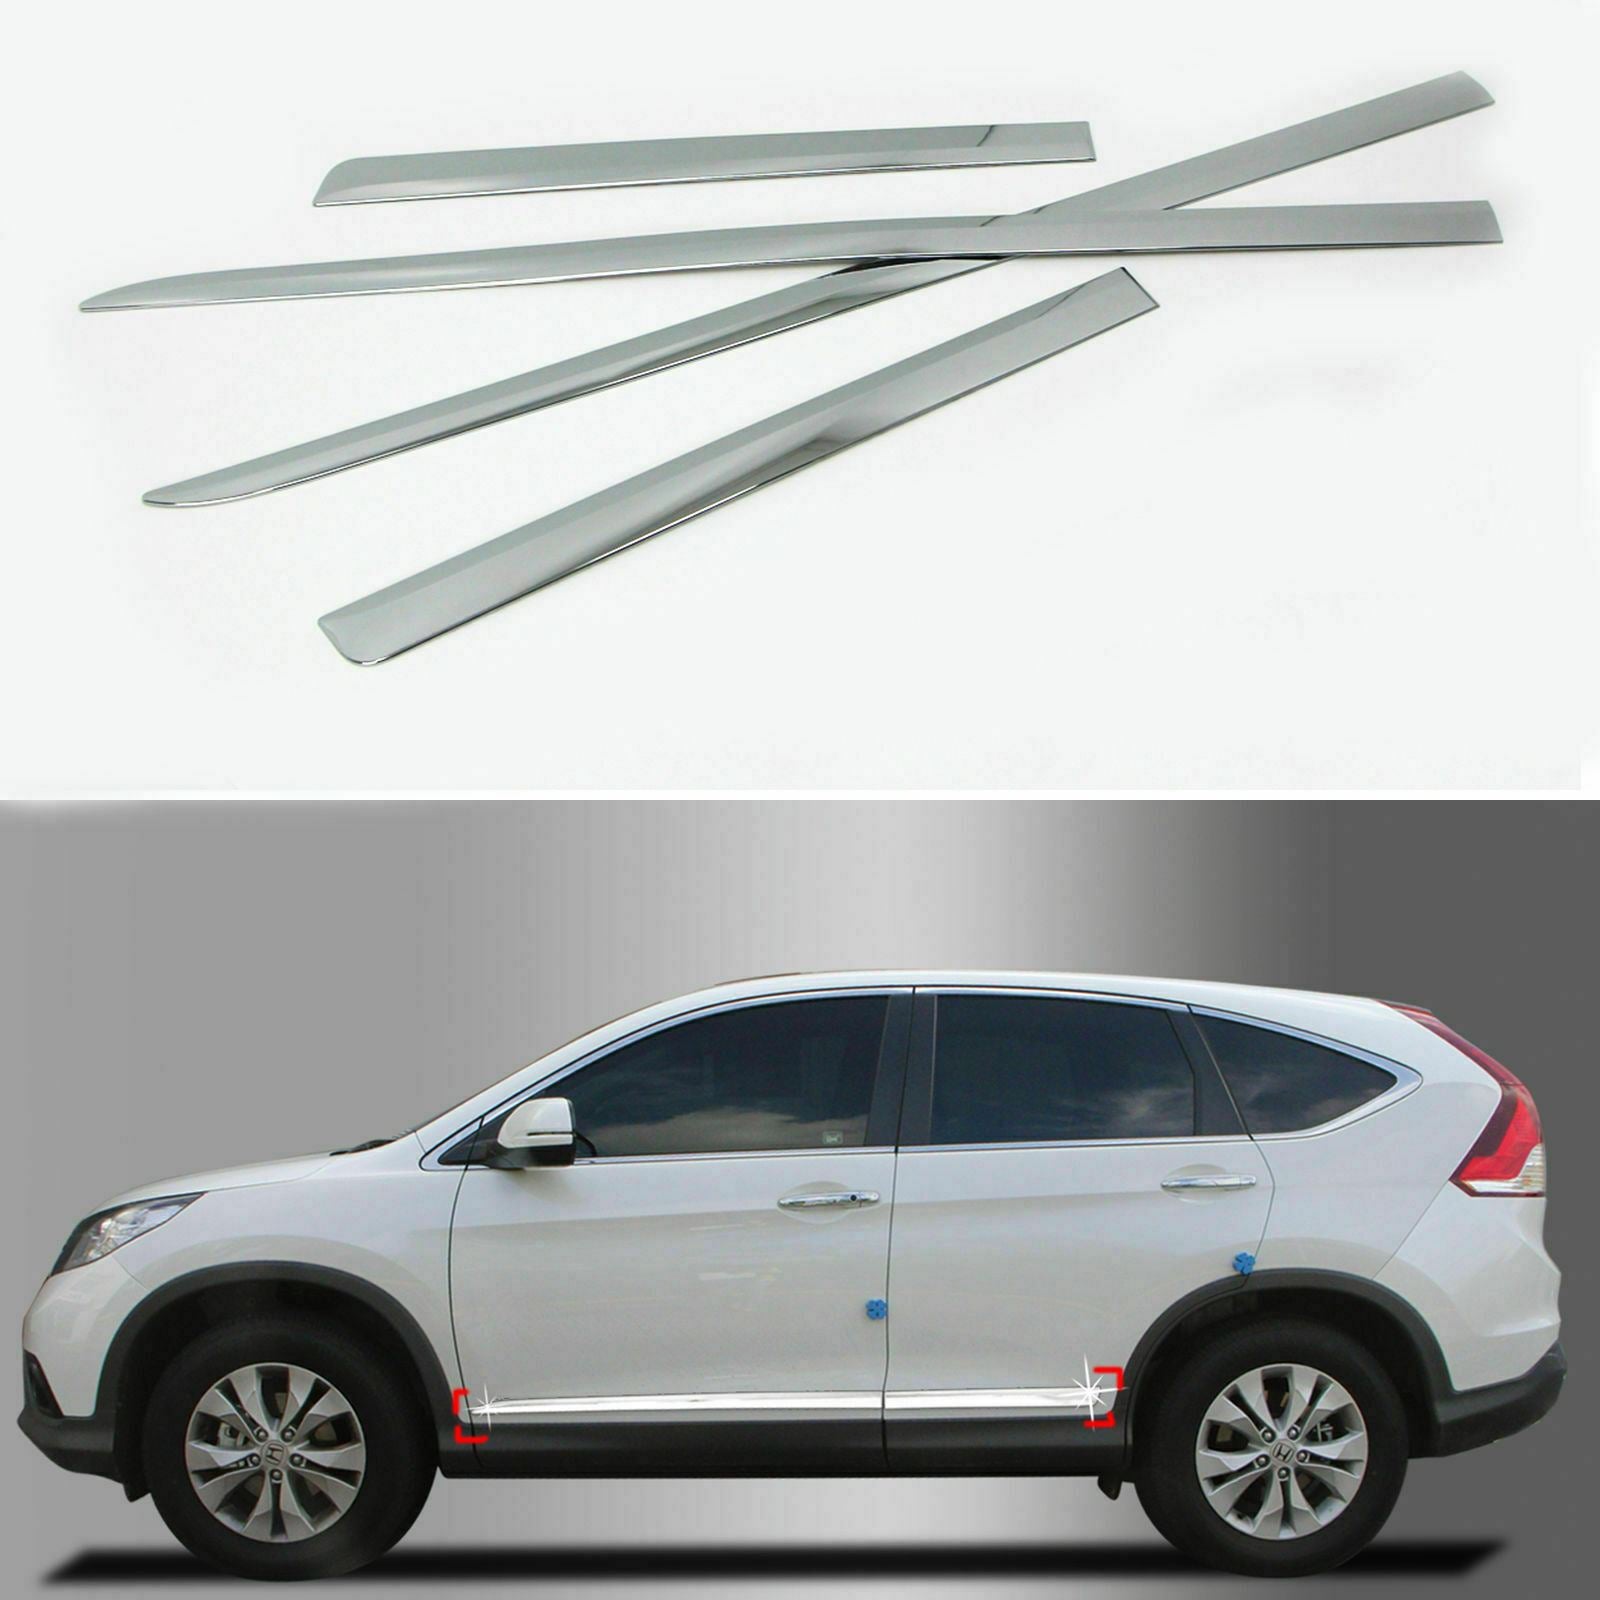 Fit 2012-2016 Honda CRV Side Body Door Molding Lid Cover Trim Plate Kit (Chrome)